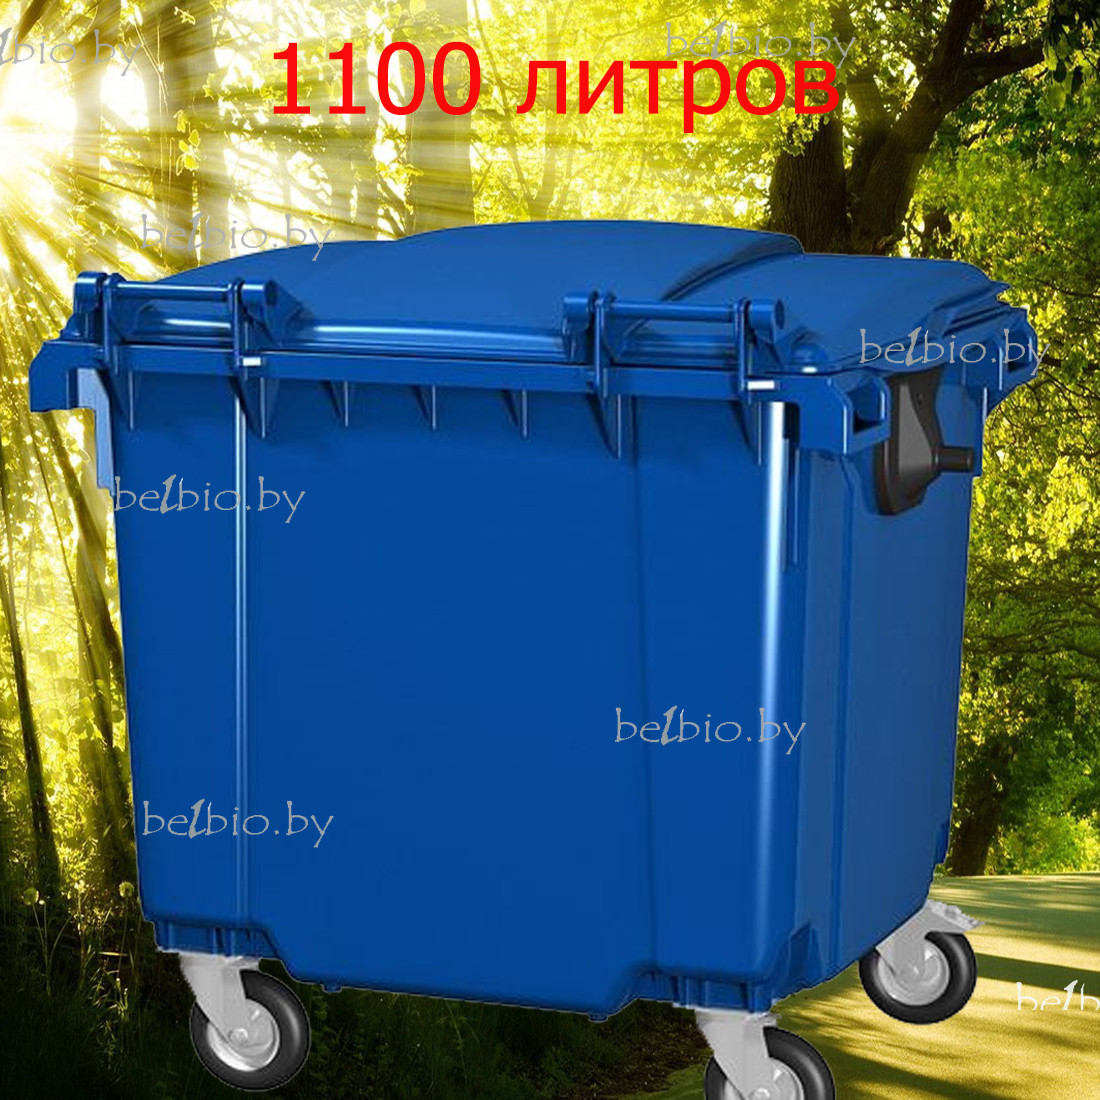 Пластиковый мусорный контейнер(бак) 1100 литров синий на 4 колесах